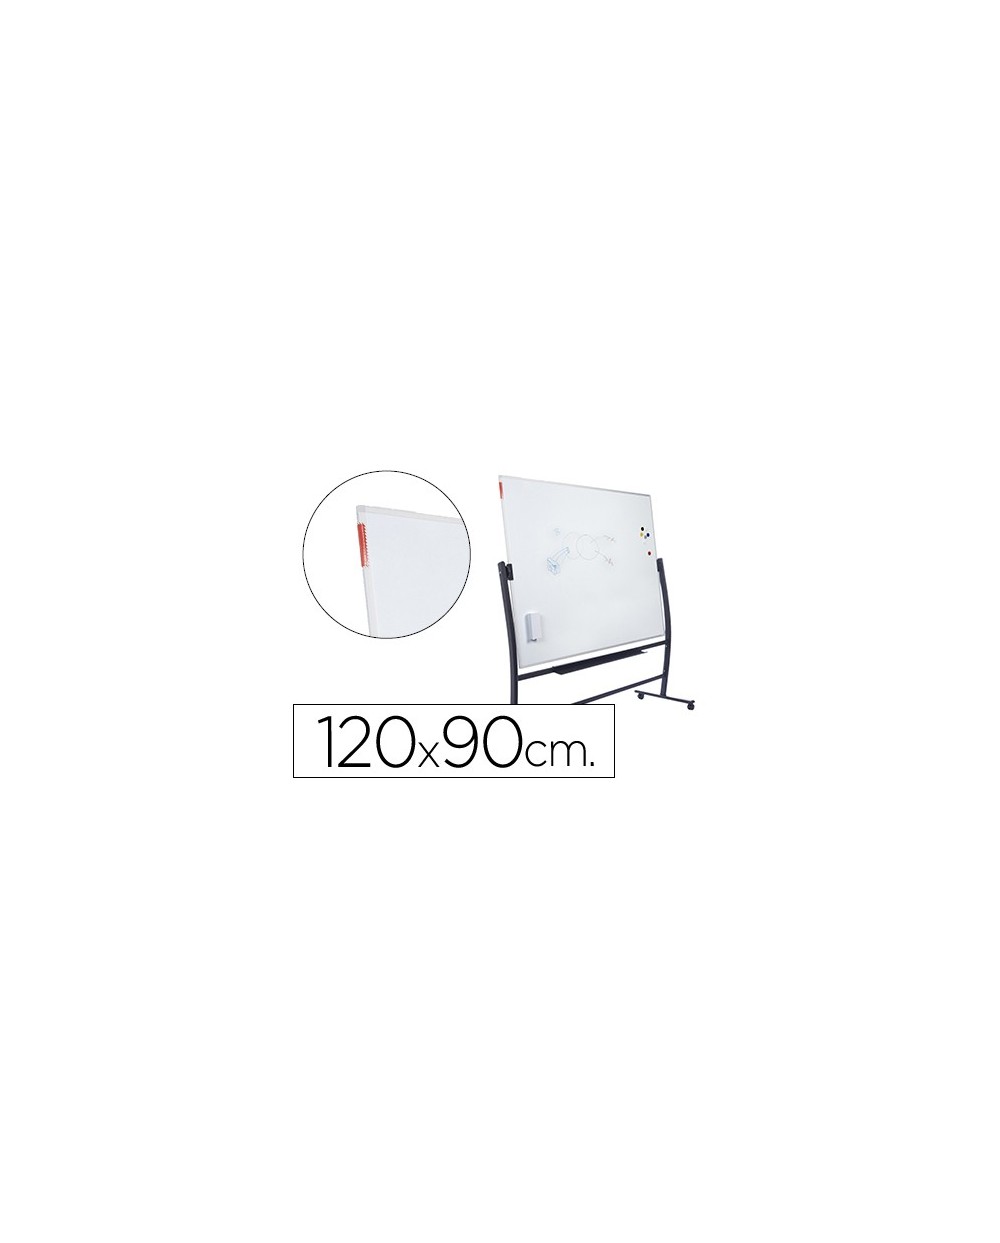 Pizarra blanca rocada lacada magnetica con soporte volteable doble cara 90x120 cm